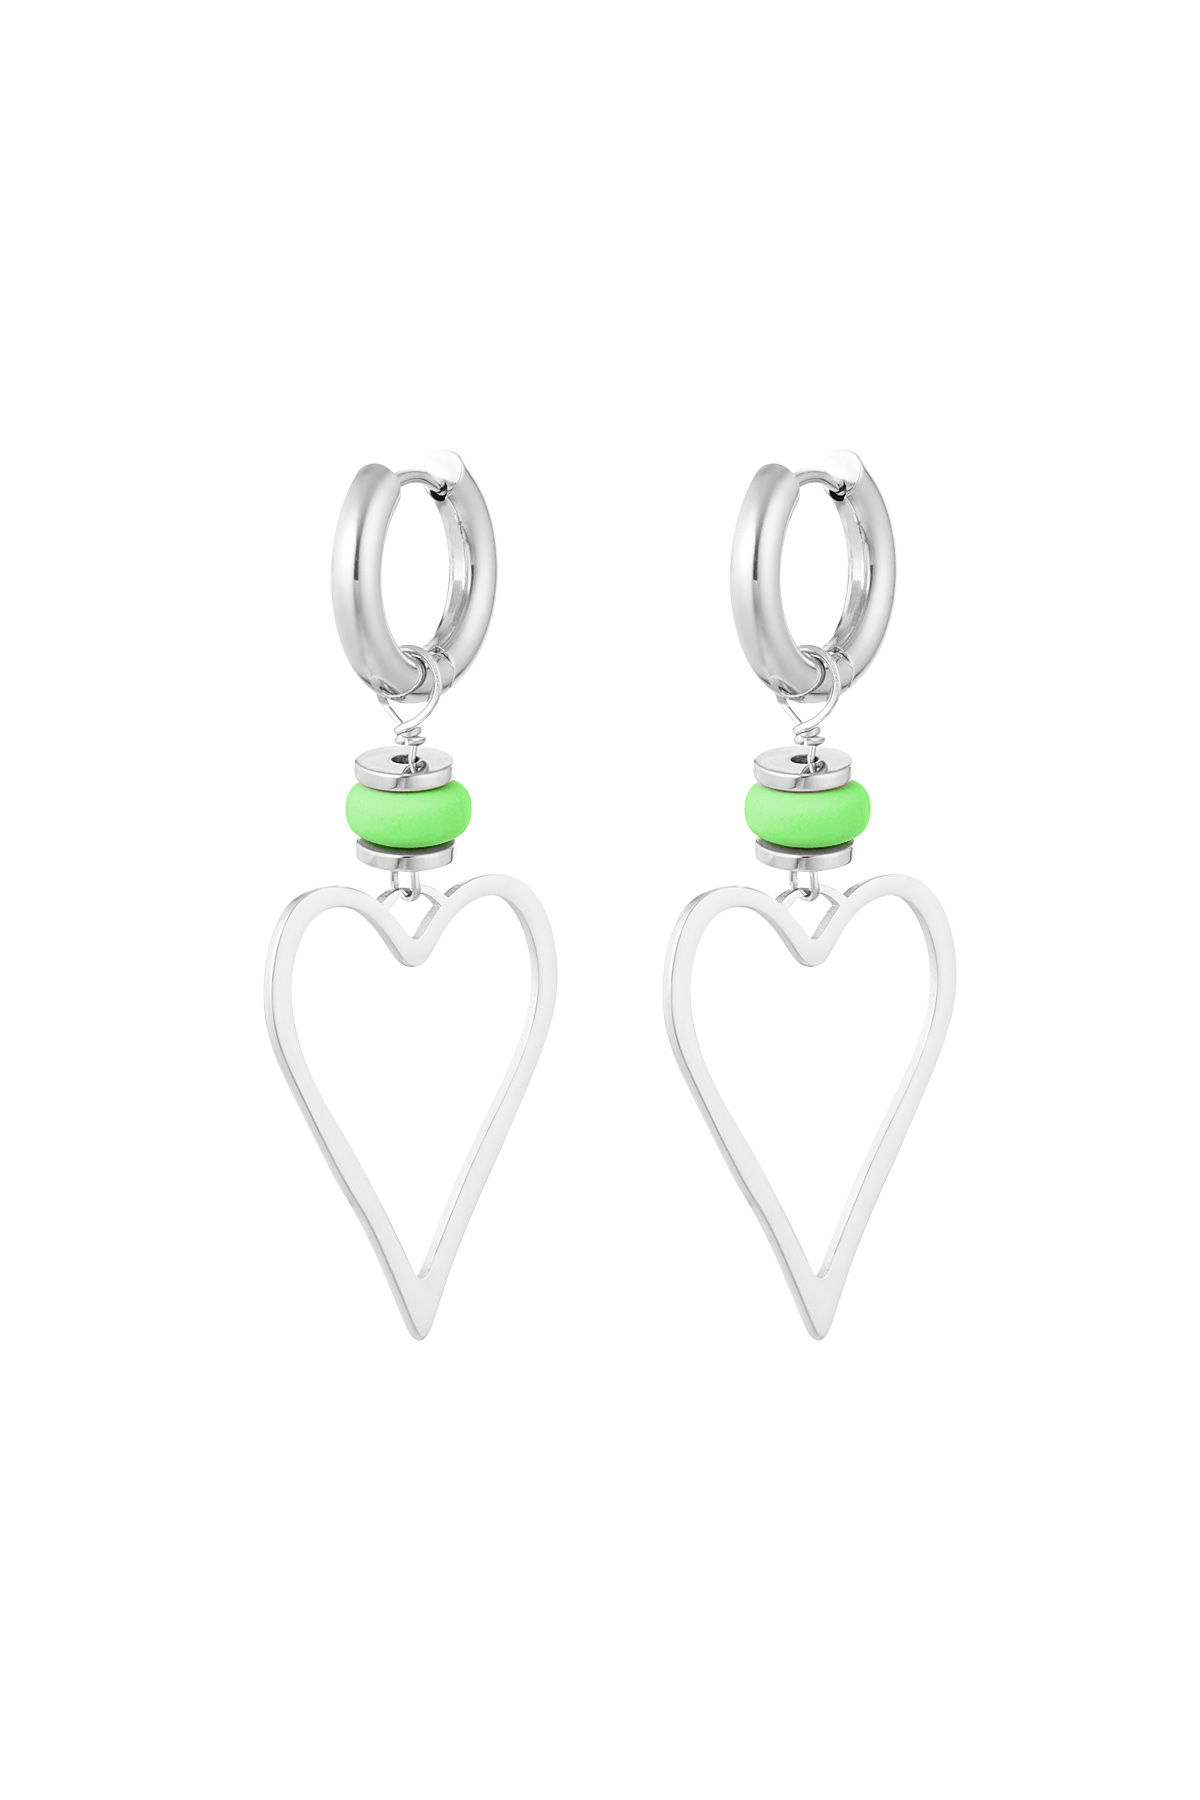 Ohrringe Herz mit Perle - Silber/Grün h5 